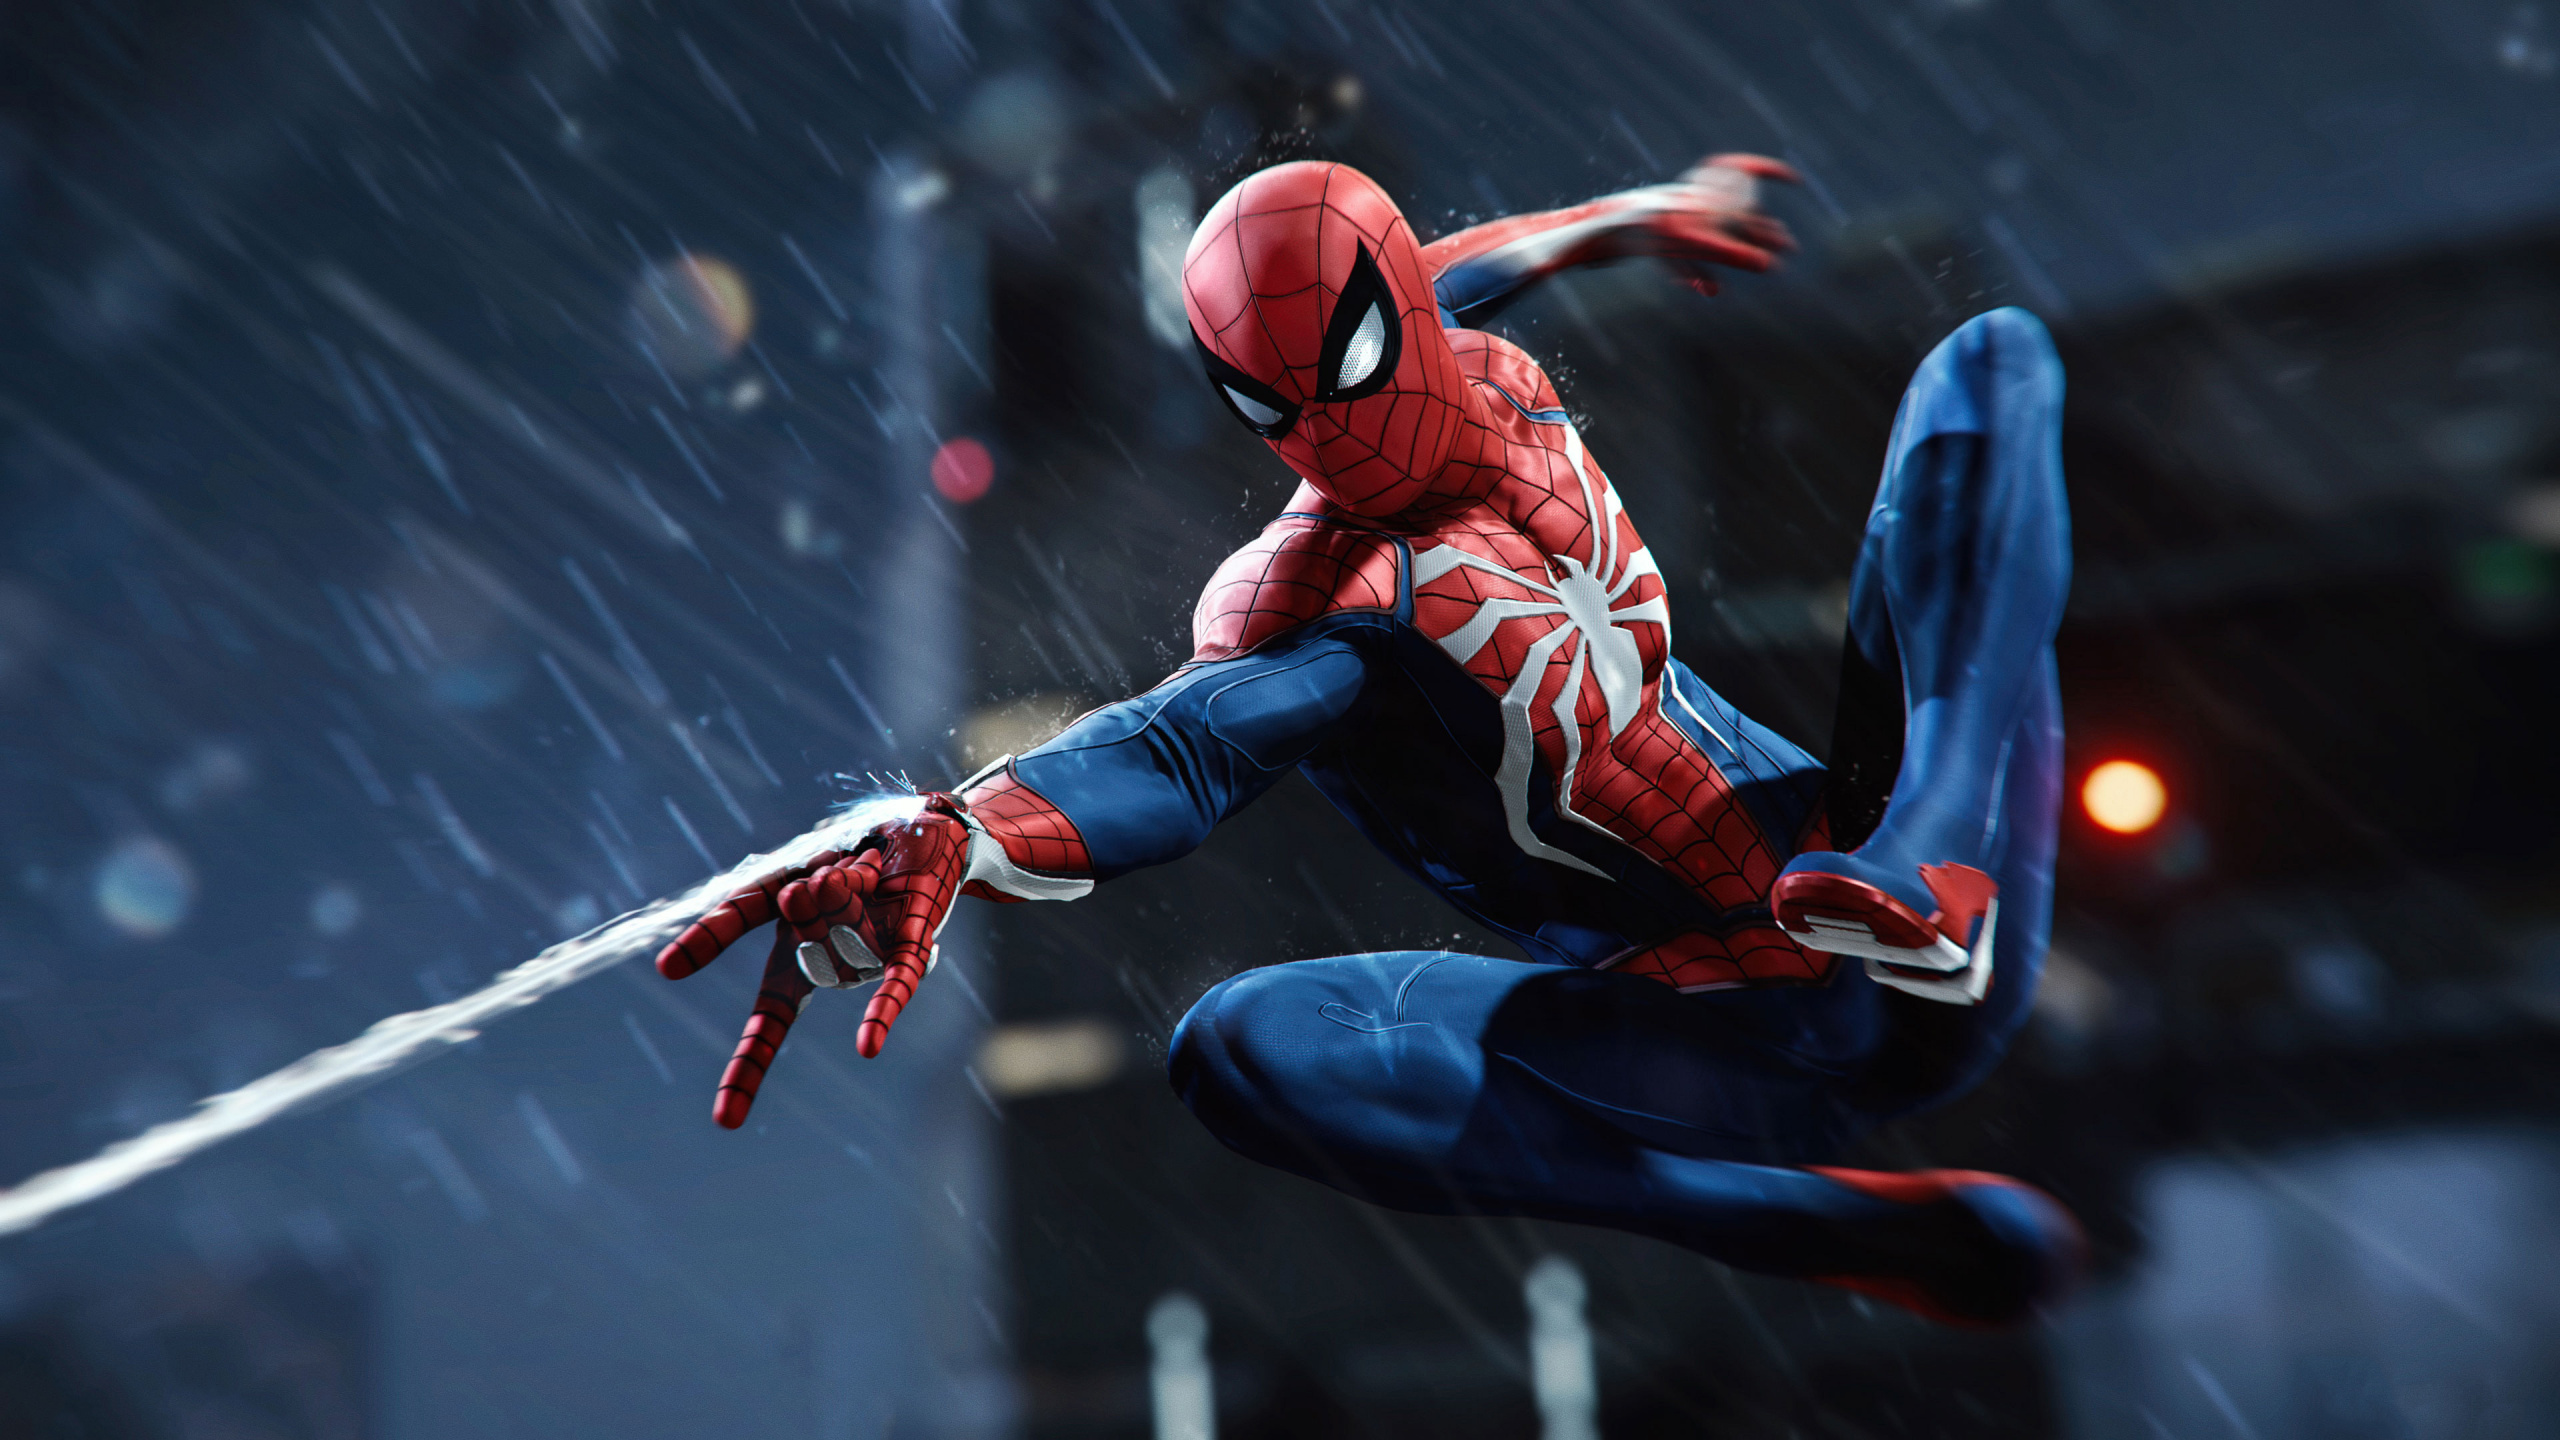 Spider-man, 患有失眠症的游戏, 超级英雄, 图行动, 虚构的人物 壁纸 2560x1440 允许